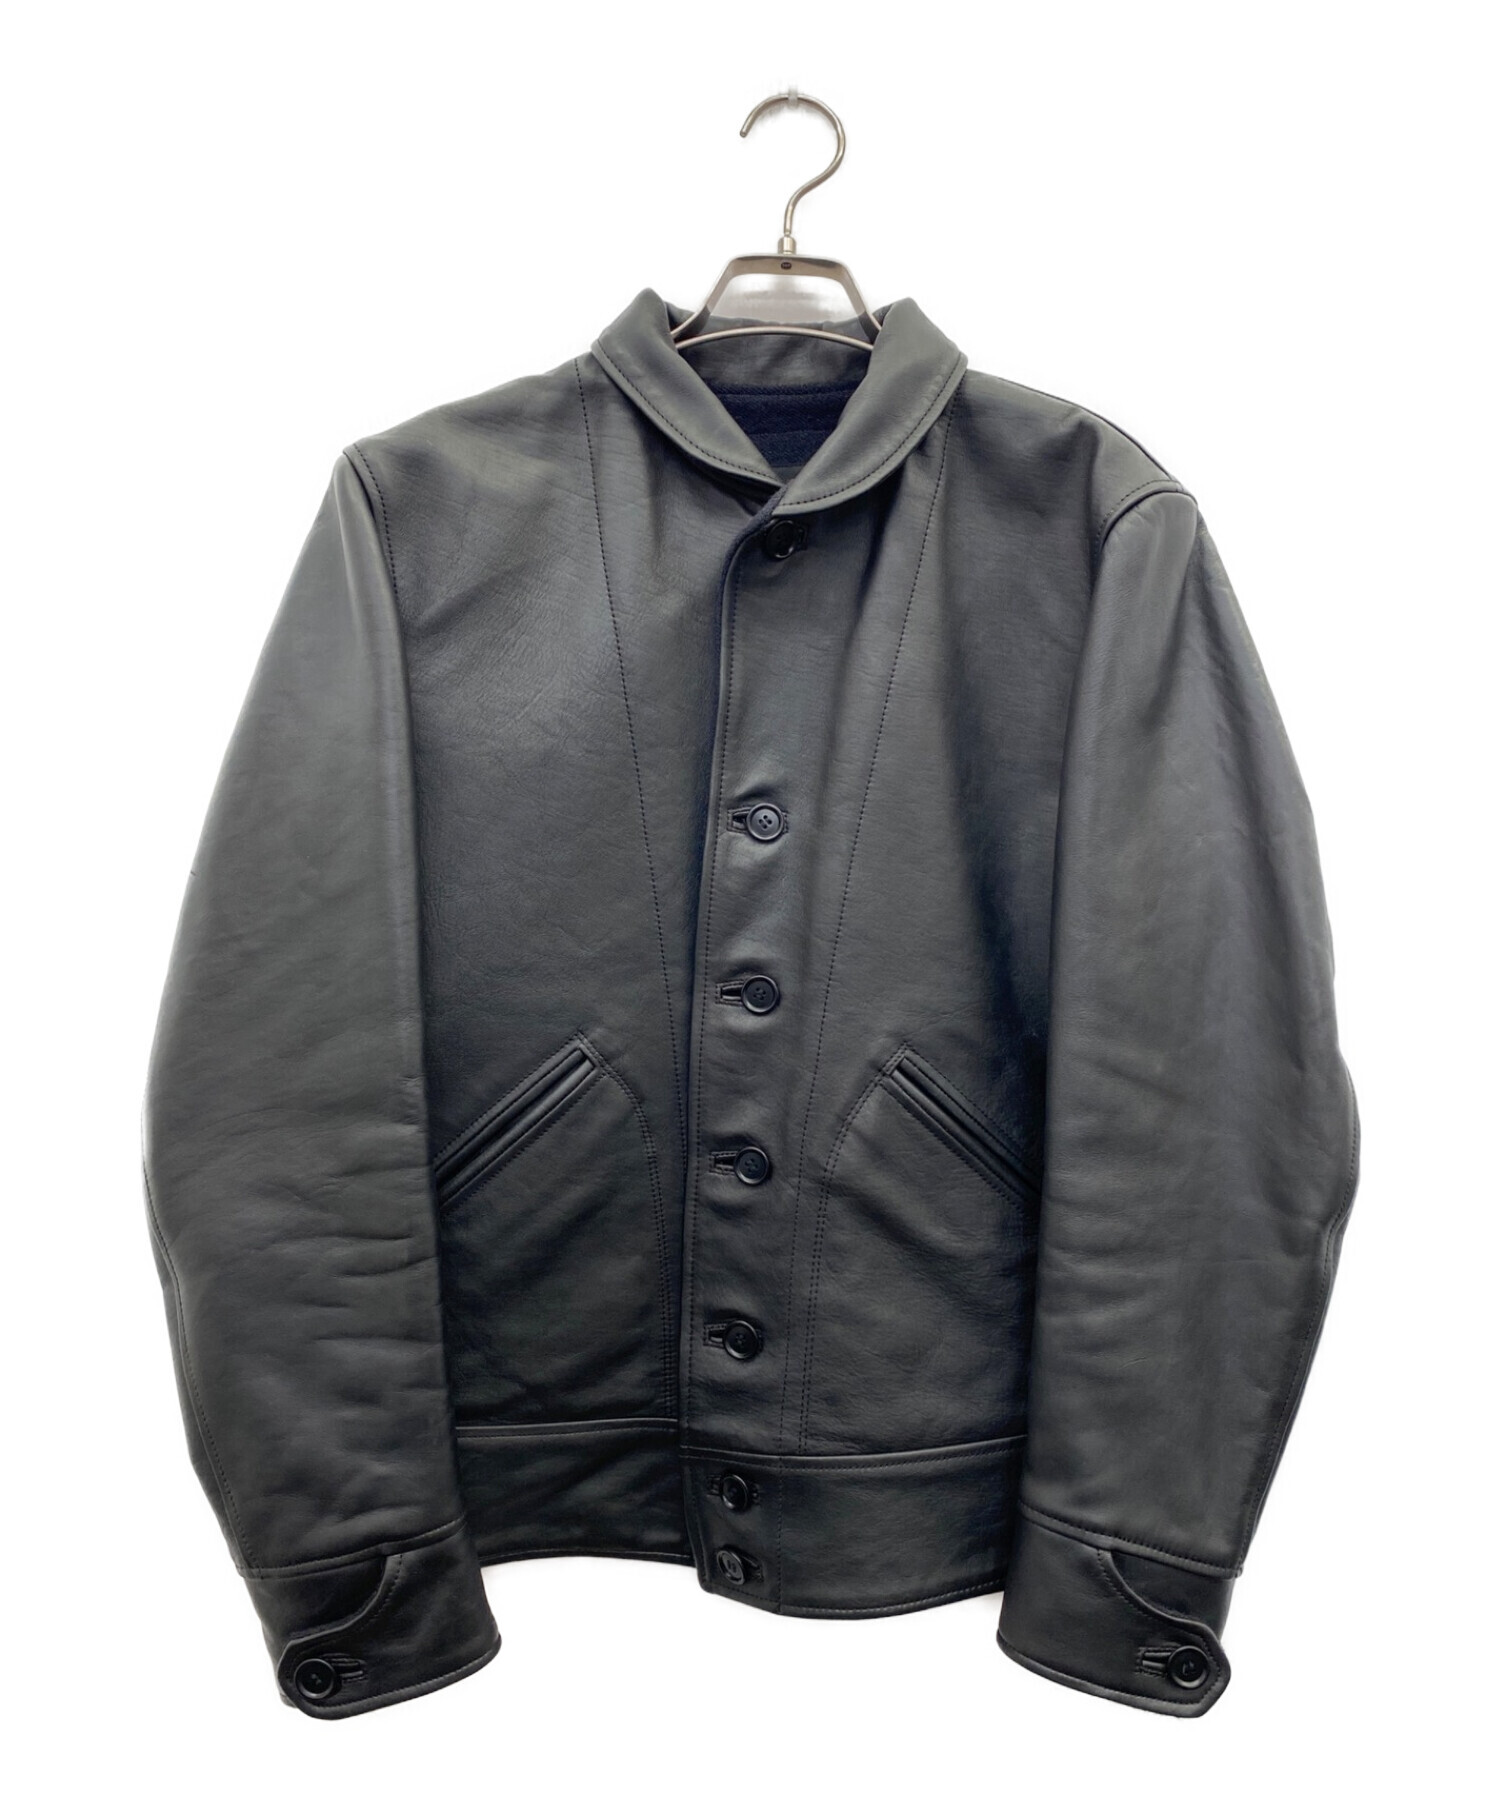 テンダーロイン tenderloin レザージャケット leather jktジャケット